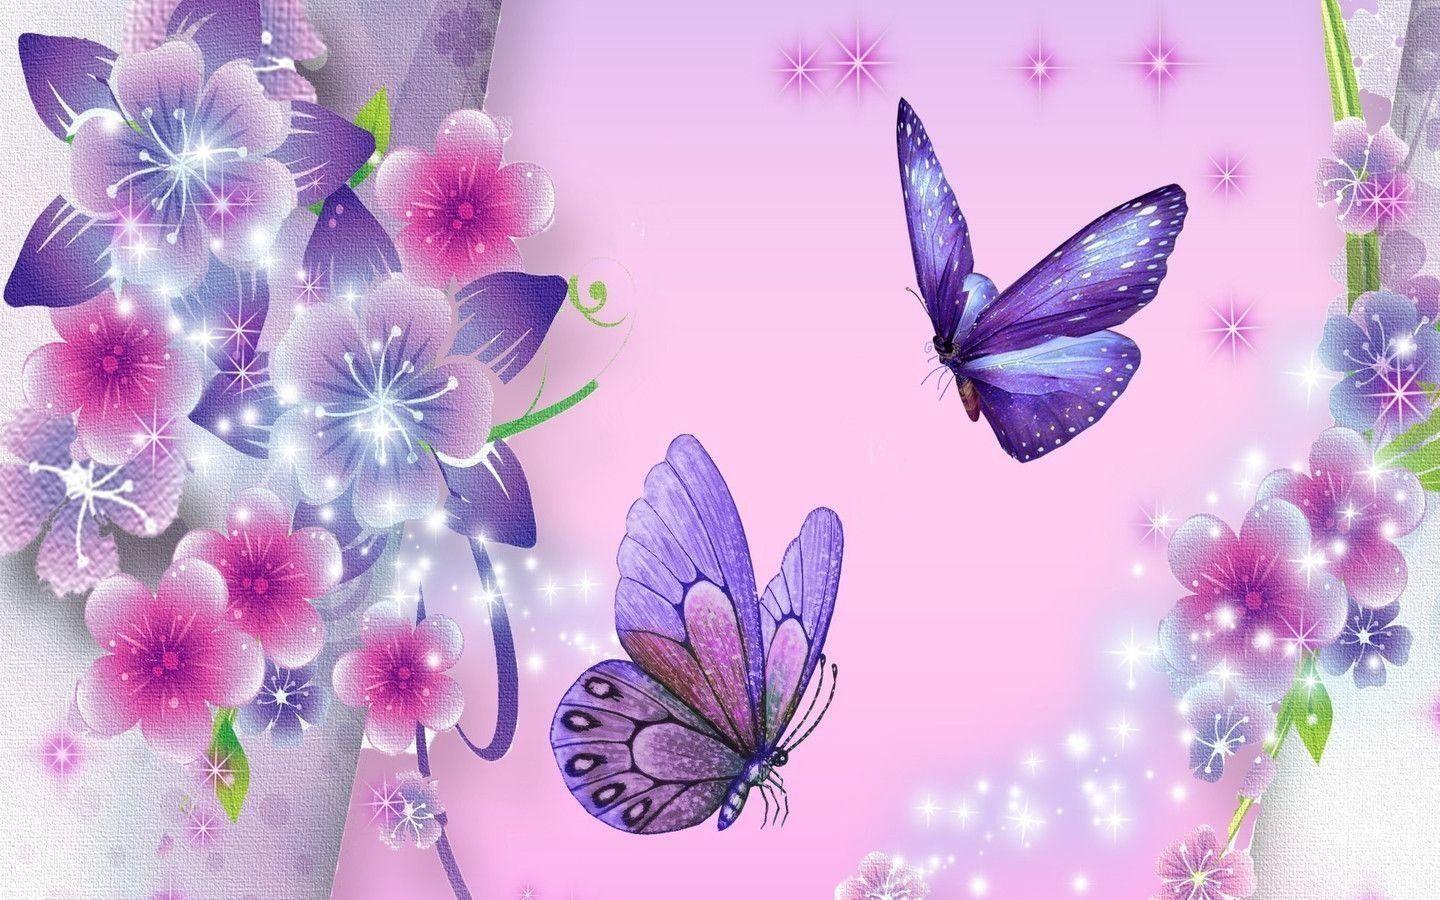 Purple Glitter Butterfly Wallpapers - Top Free Purple ...